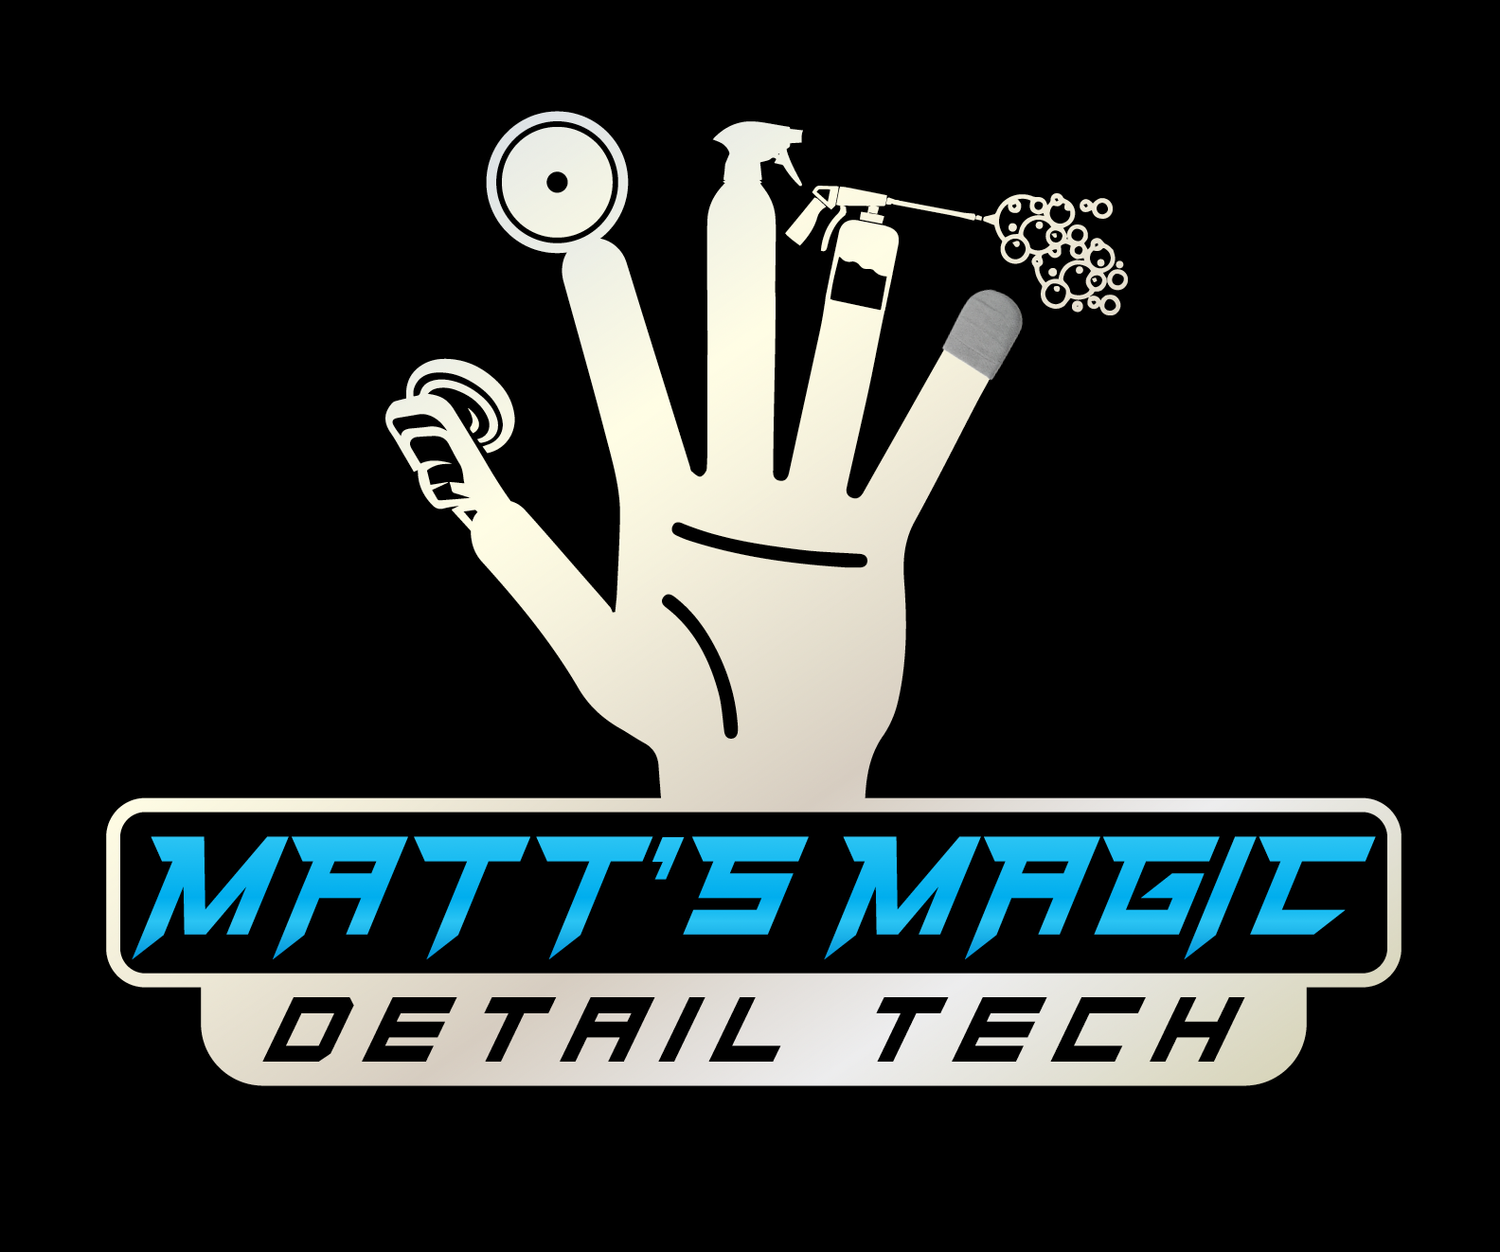 Matt&#39;s Magic Detail Tech